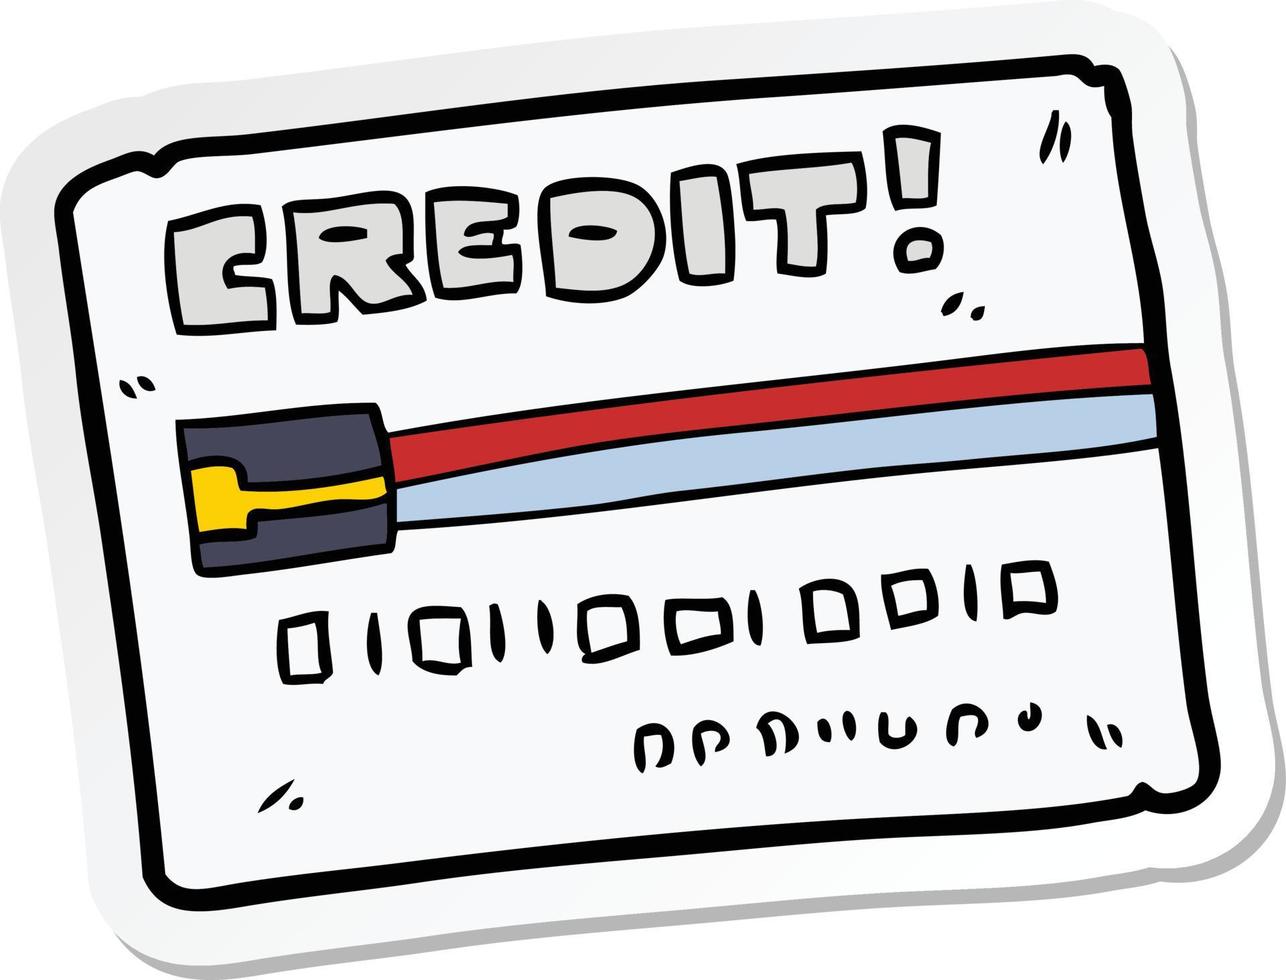 klistermärke av ett tecknat kreditkort vektor